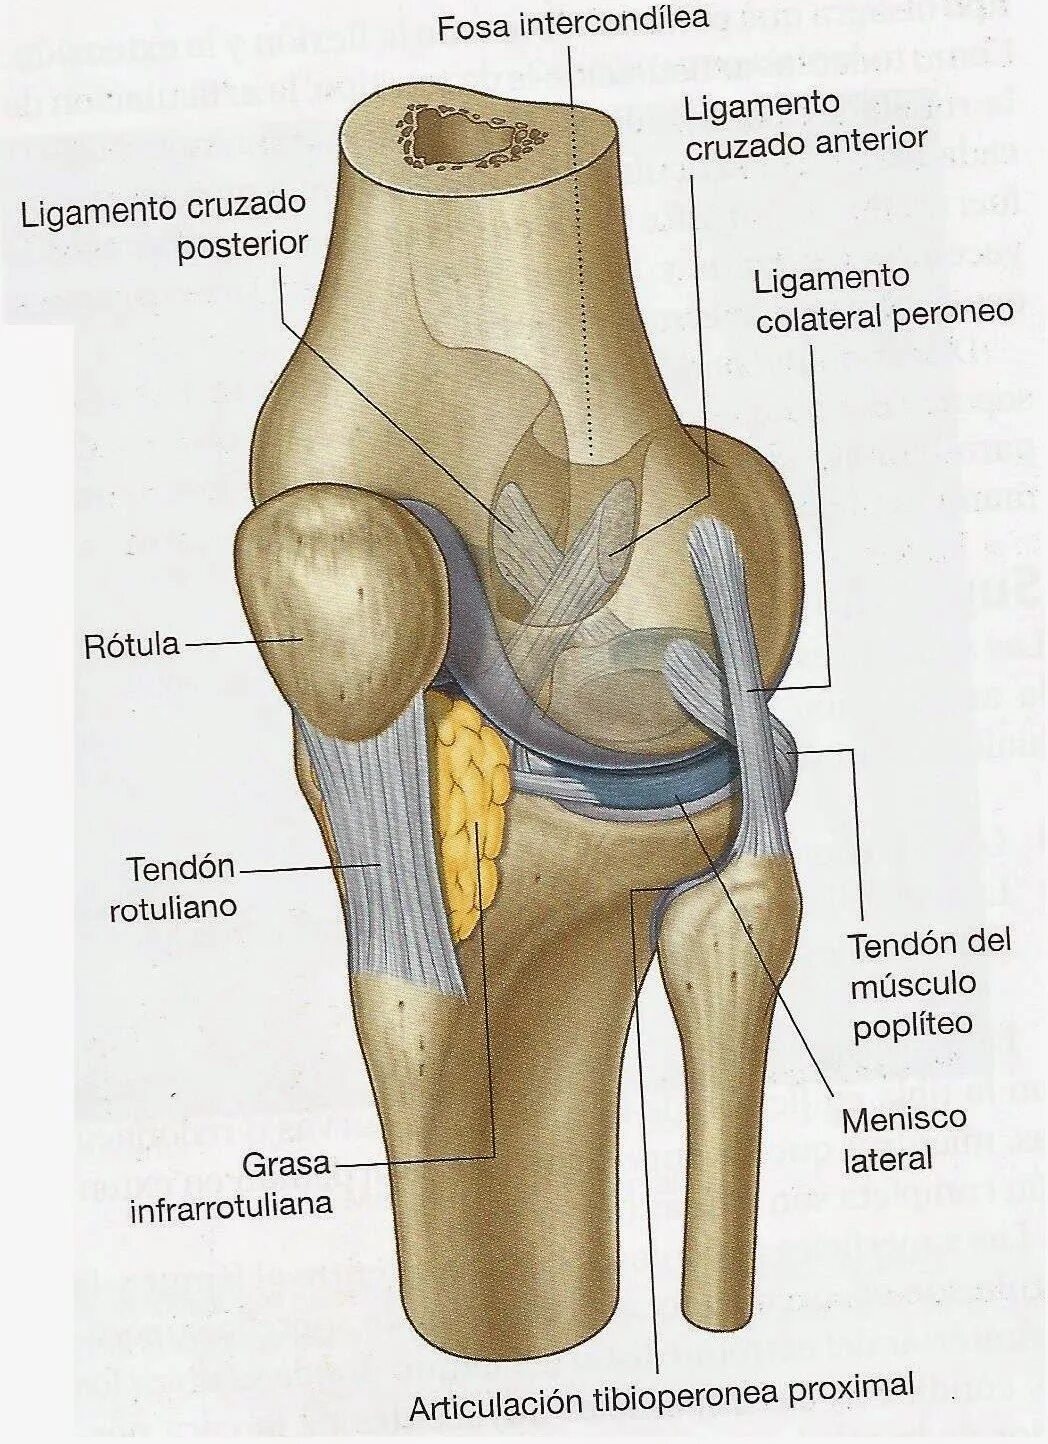 Кости голени соединения. Коленный сустав соединение костей. Нижние конечности коленный сустав кости. Соединения костей голени межберцовый сустав. Соединение костей нижней конечности коленный сустав.